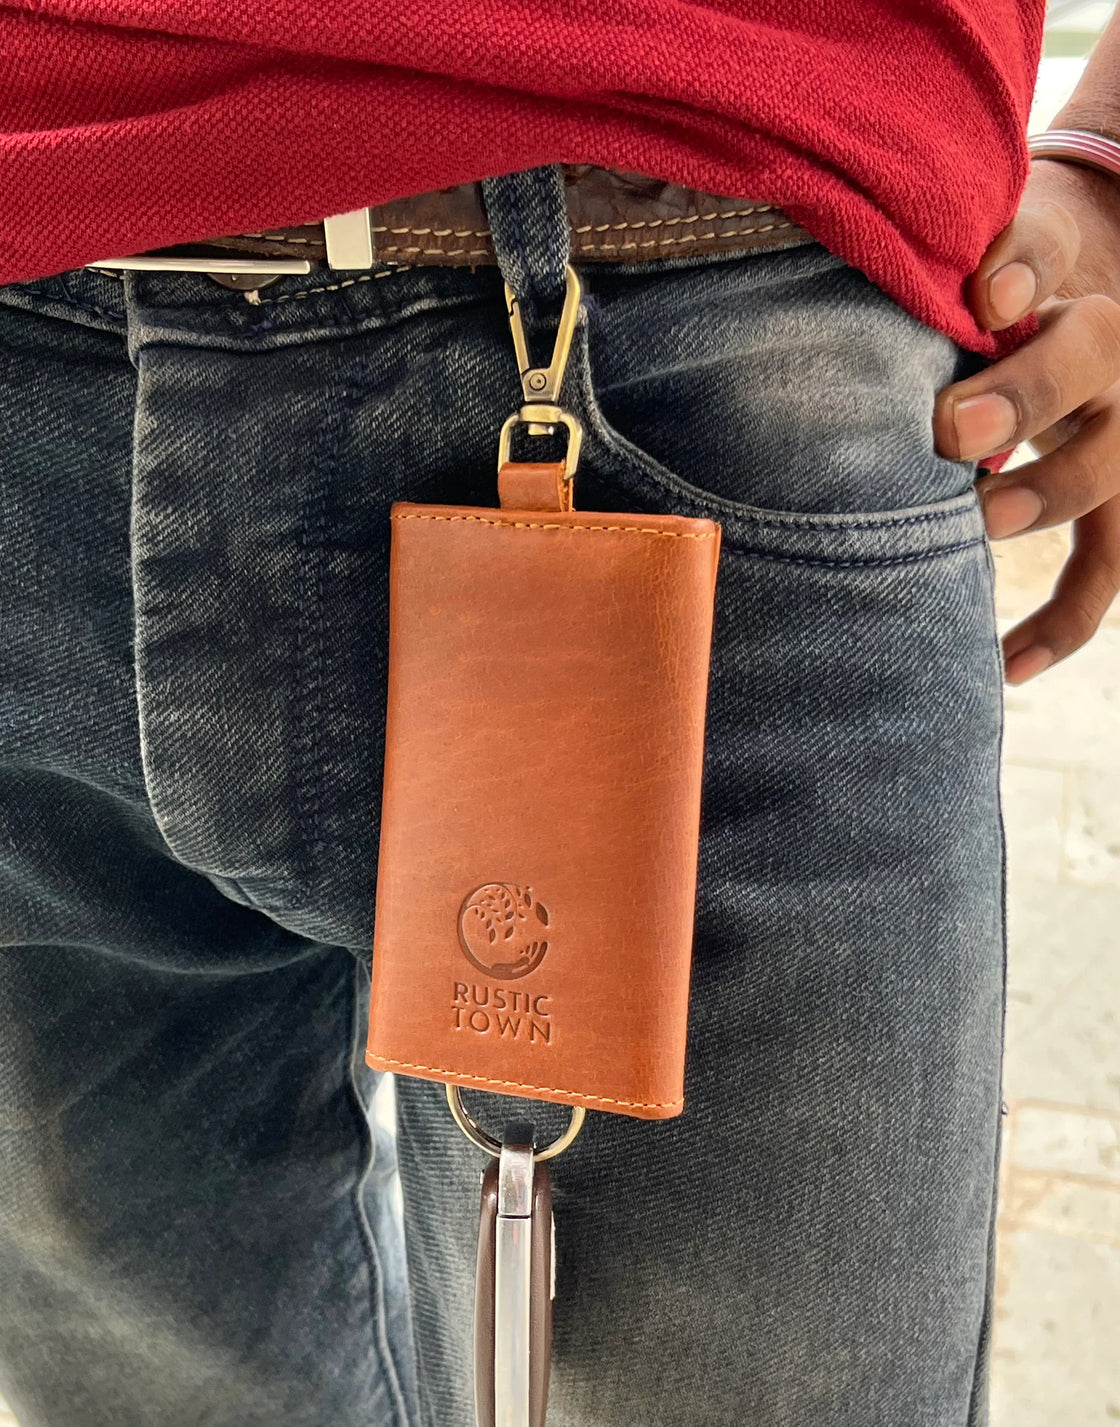 Leather key holder